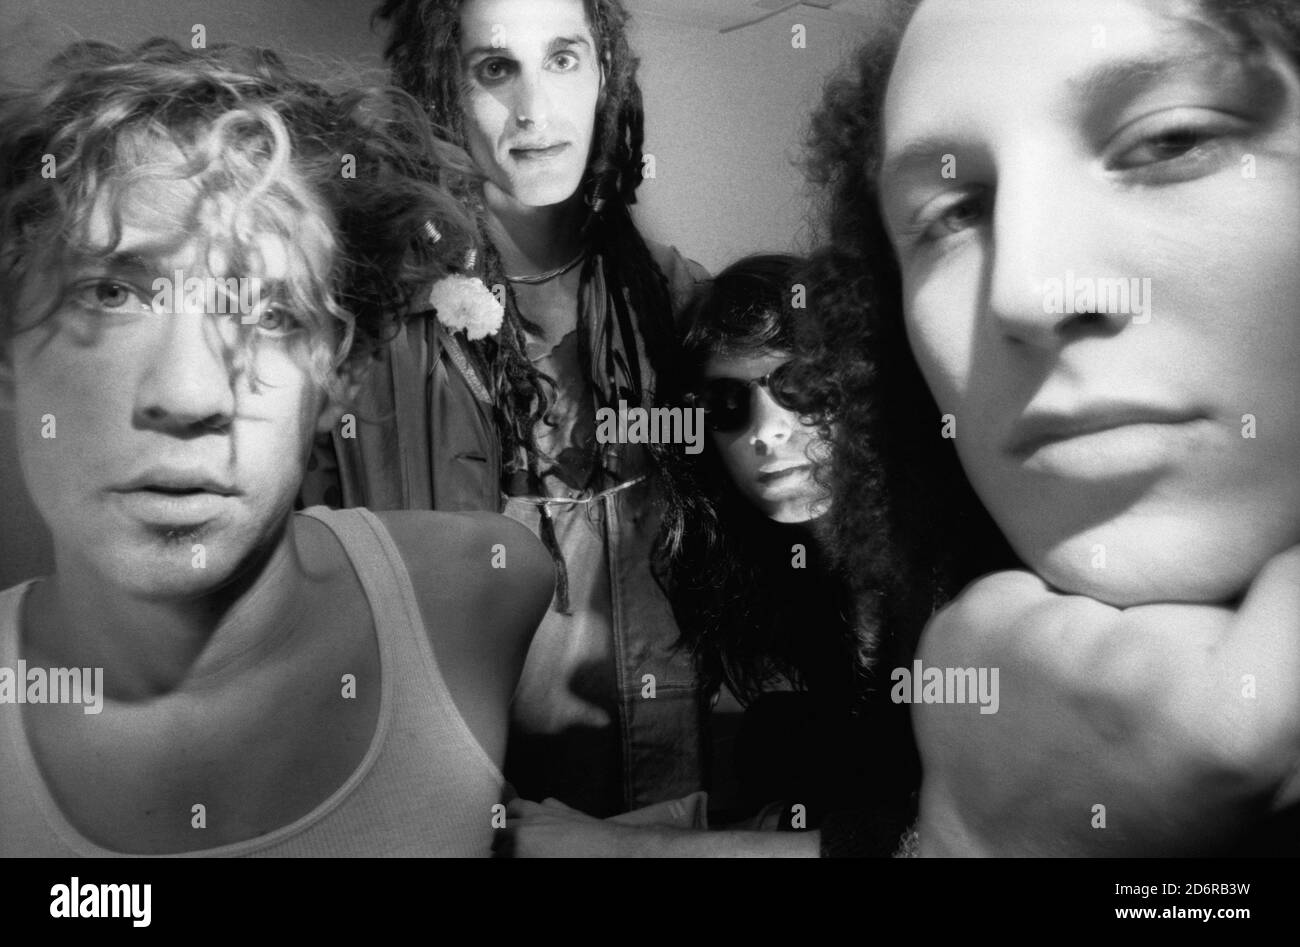 Groupe de rock alternatif américain Jane's addiction photographié à Londres in 1988 Banque D'Images